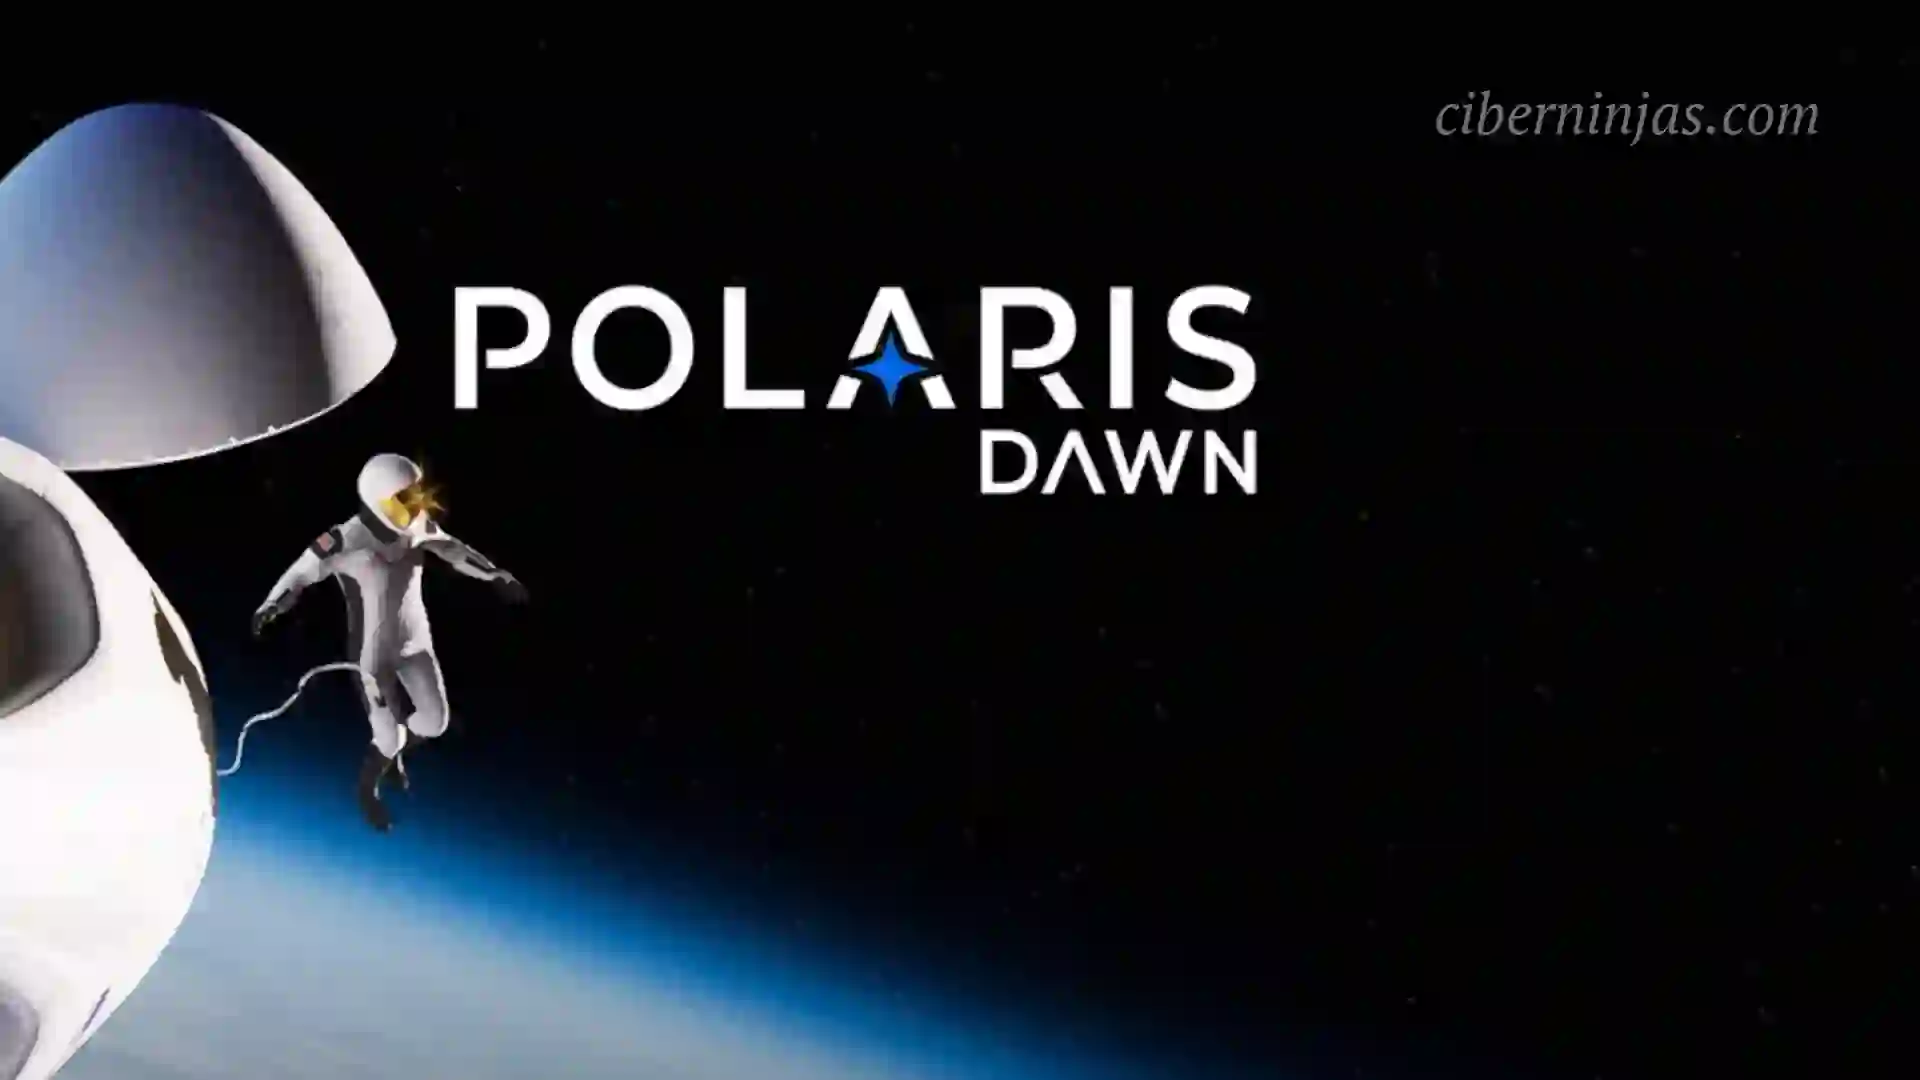 Polaris Dawn: El Amanecer de una Nueva Era en la Exploración Espacial Civil